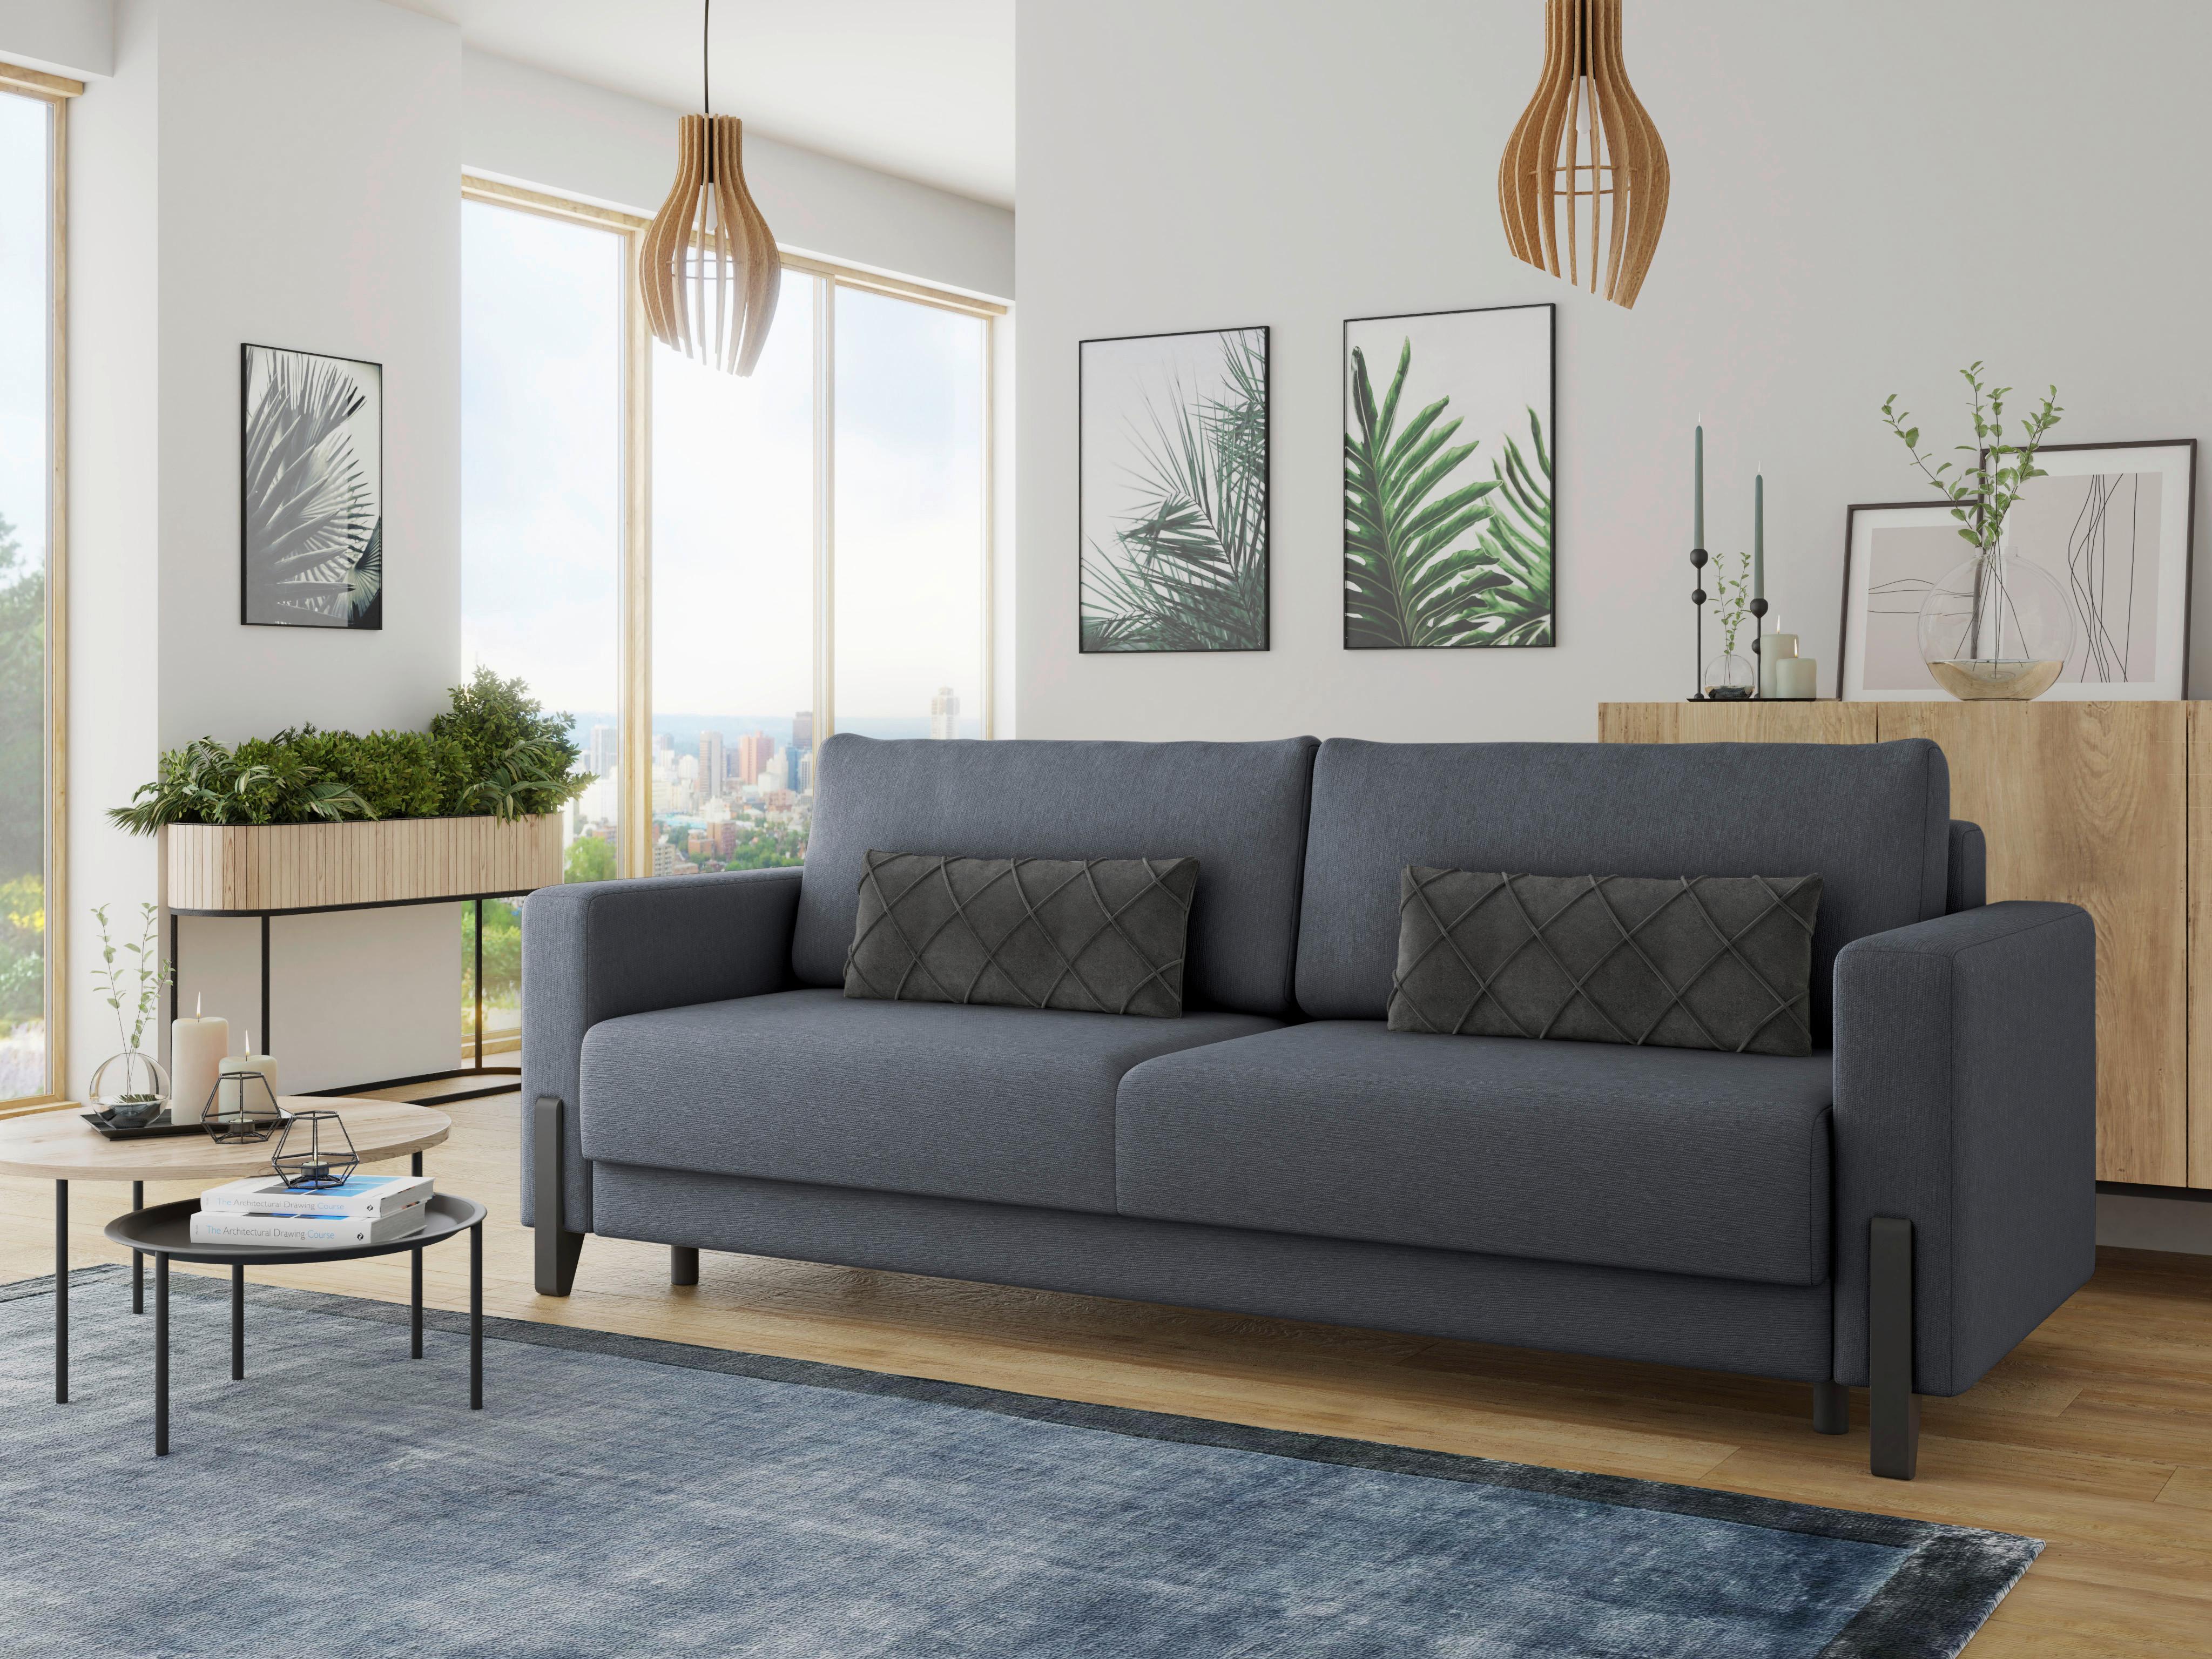 3-Sitzer-Sofa mit Schlaffunkt. Lilli mit Kissen Dunkelblau - Schwarz/Dunkelblau, Design, Textil (234/90/95cm) - Livetastic